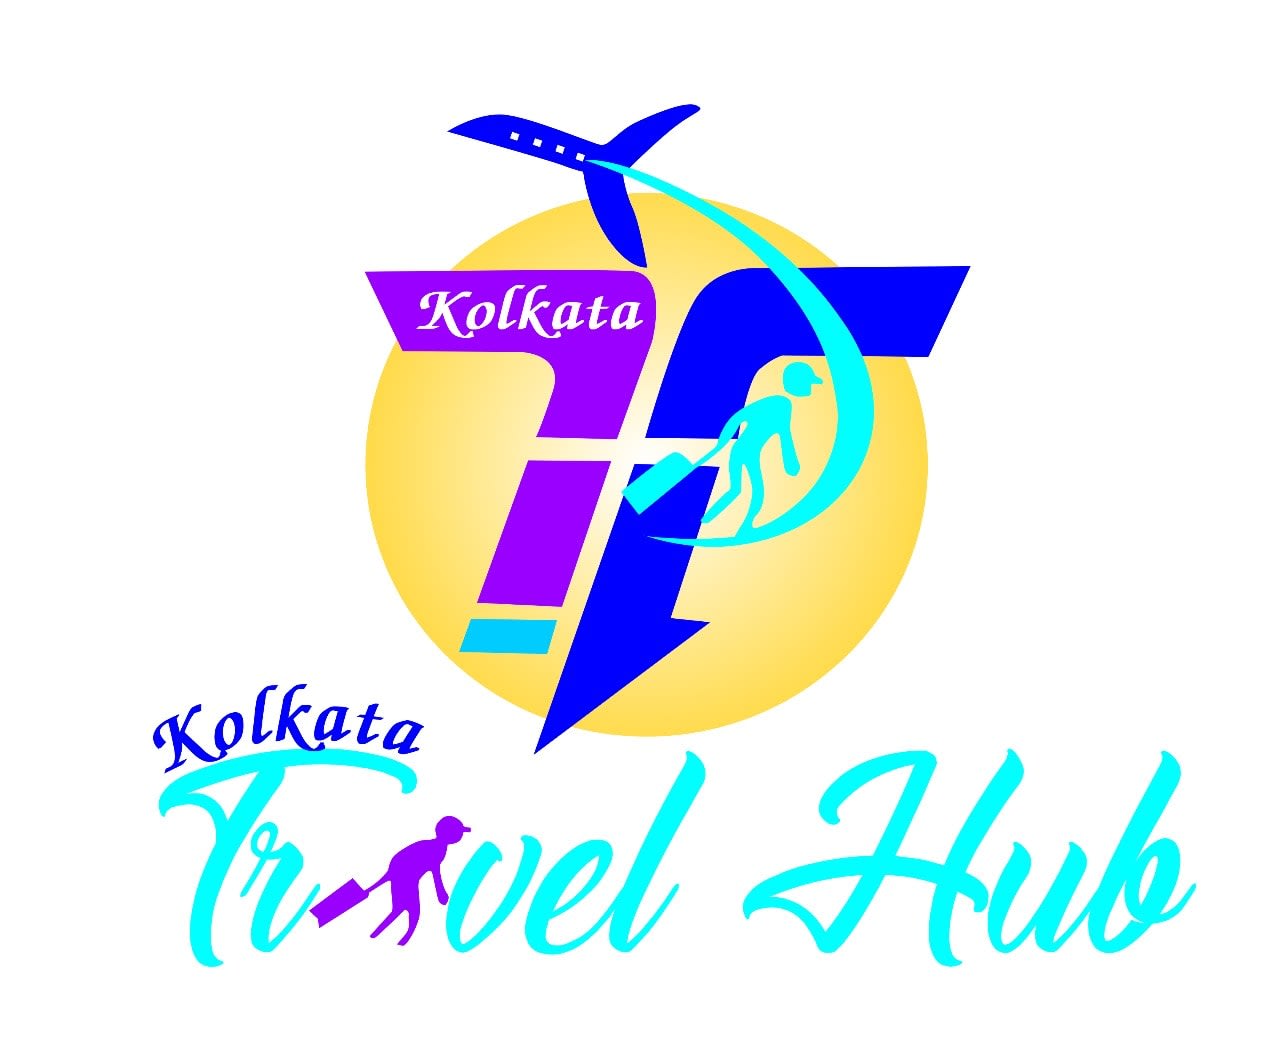 Kolkata Travel Hub